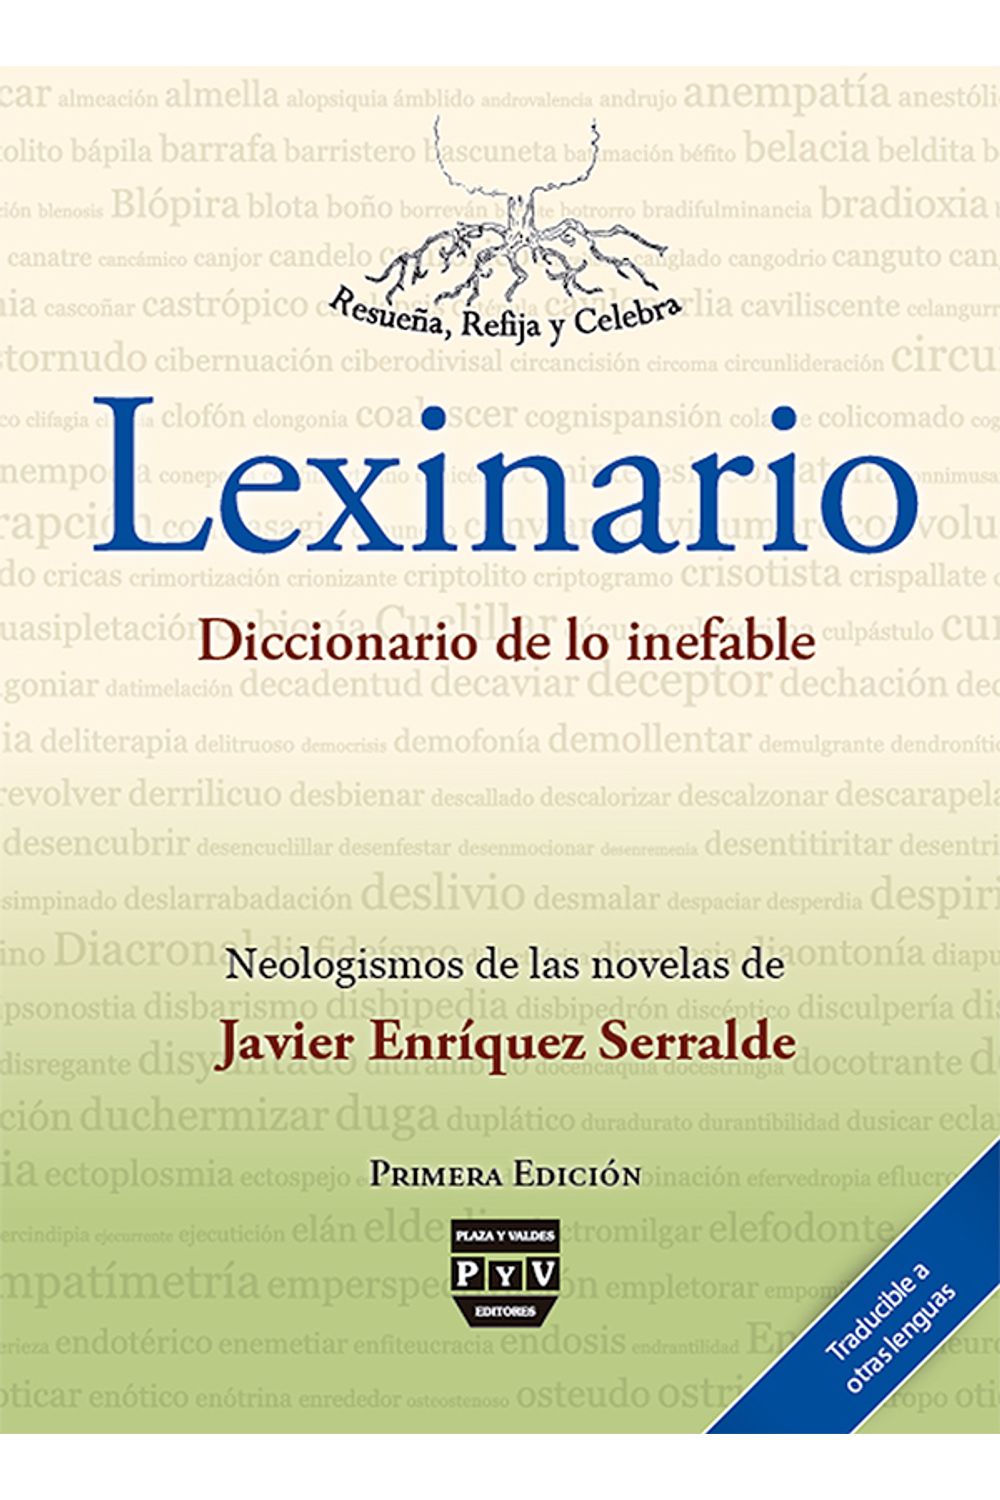 bm-lexinario-diccionario-de-lo-inefable-plaza-y-valdes-9786074026146